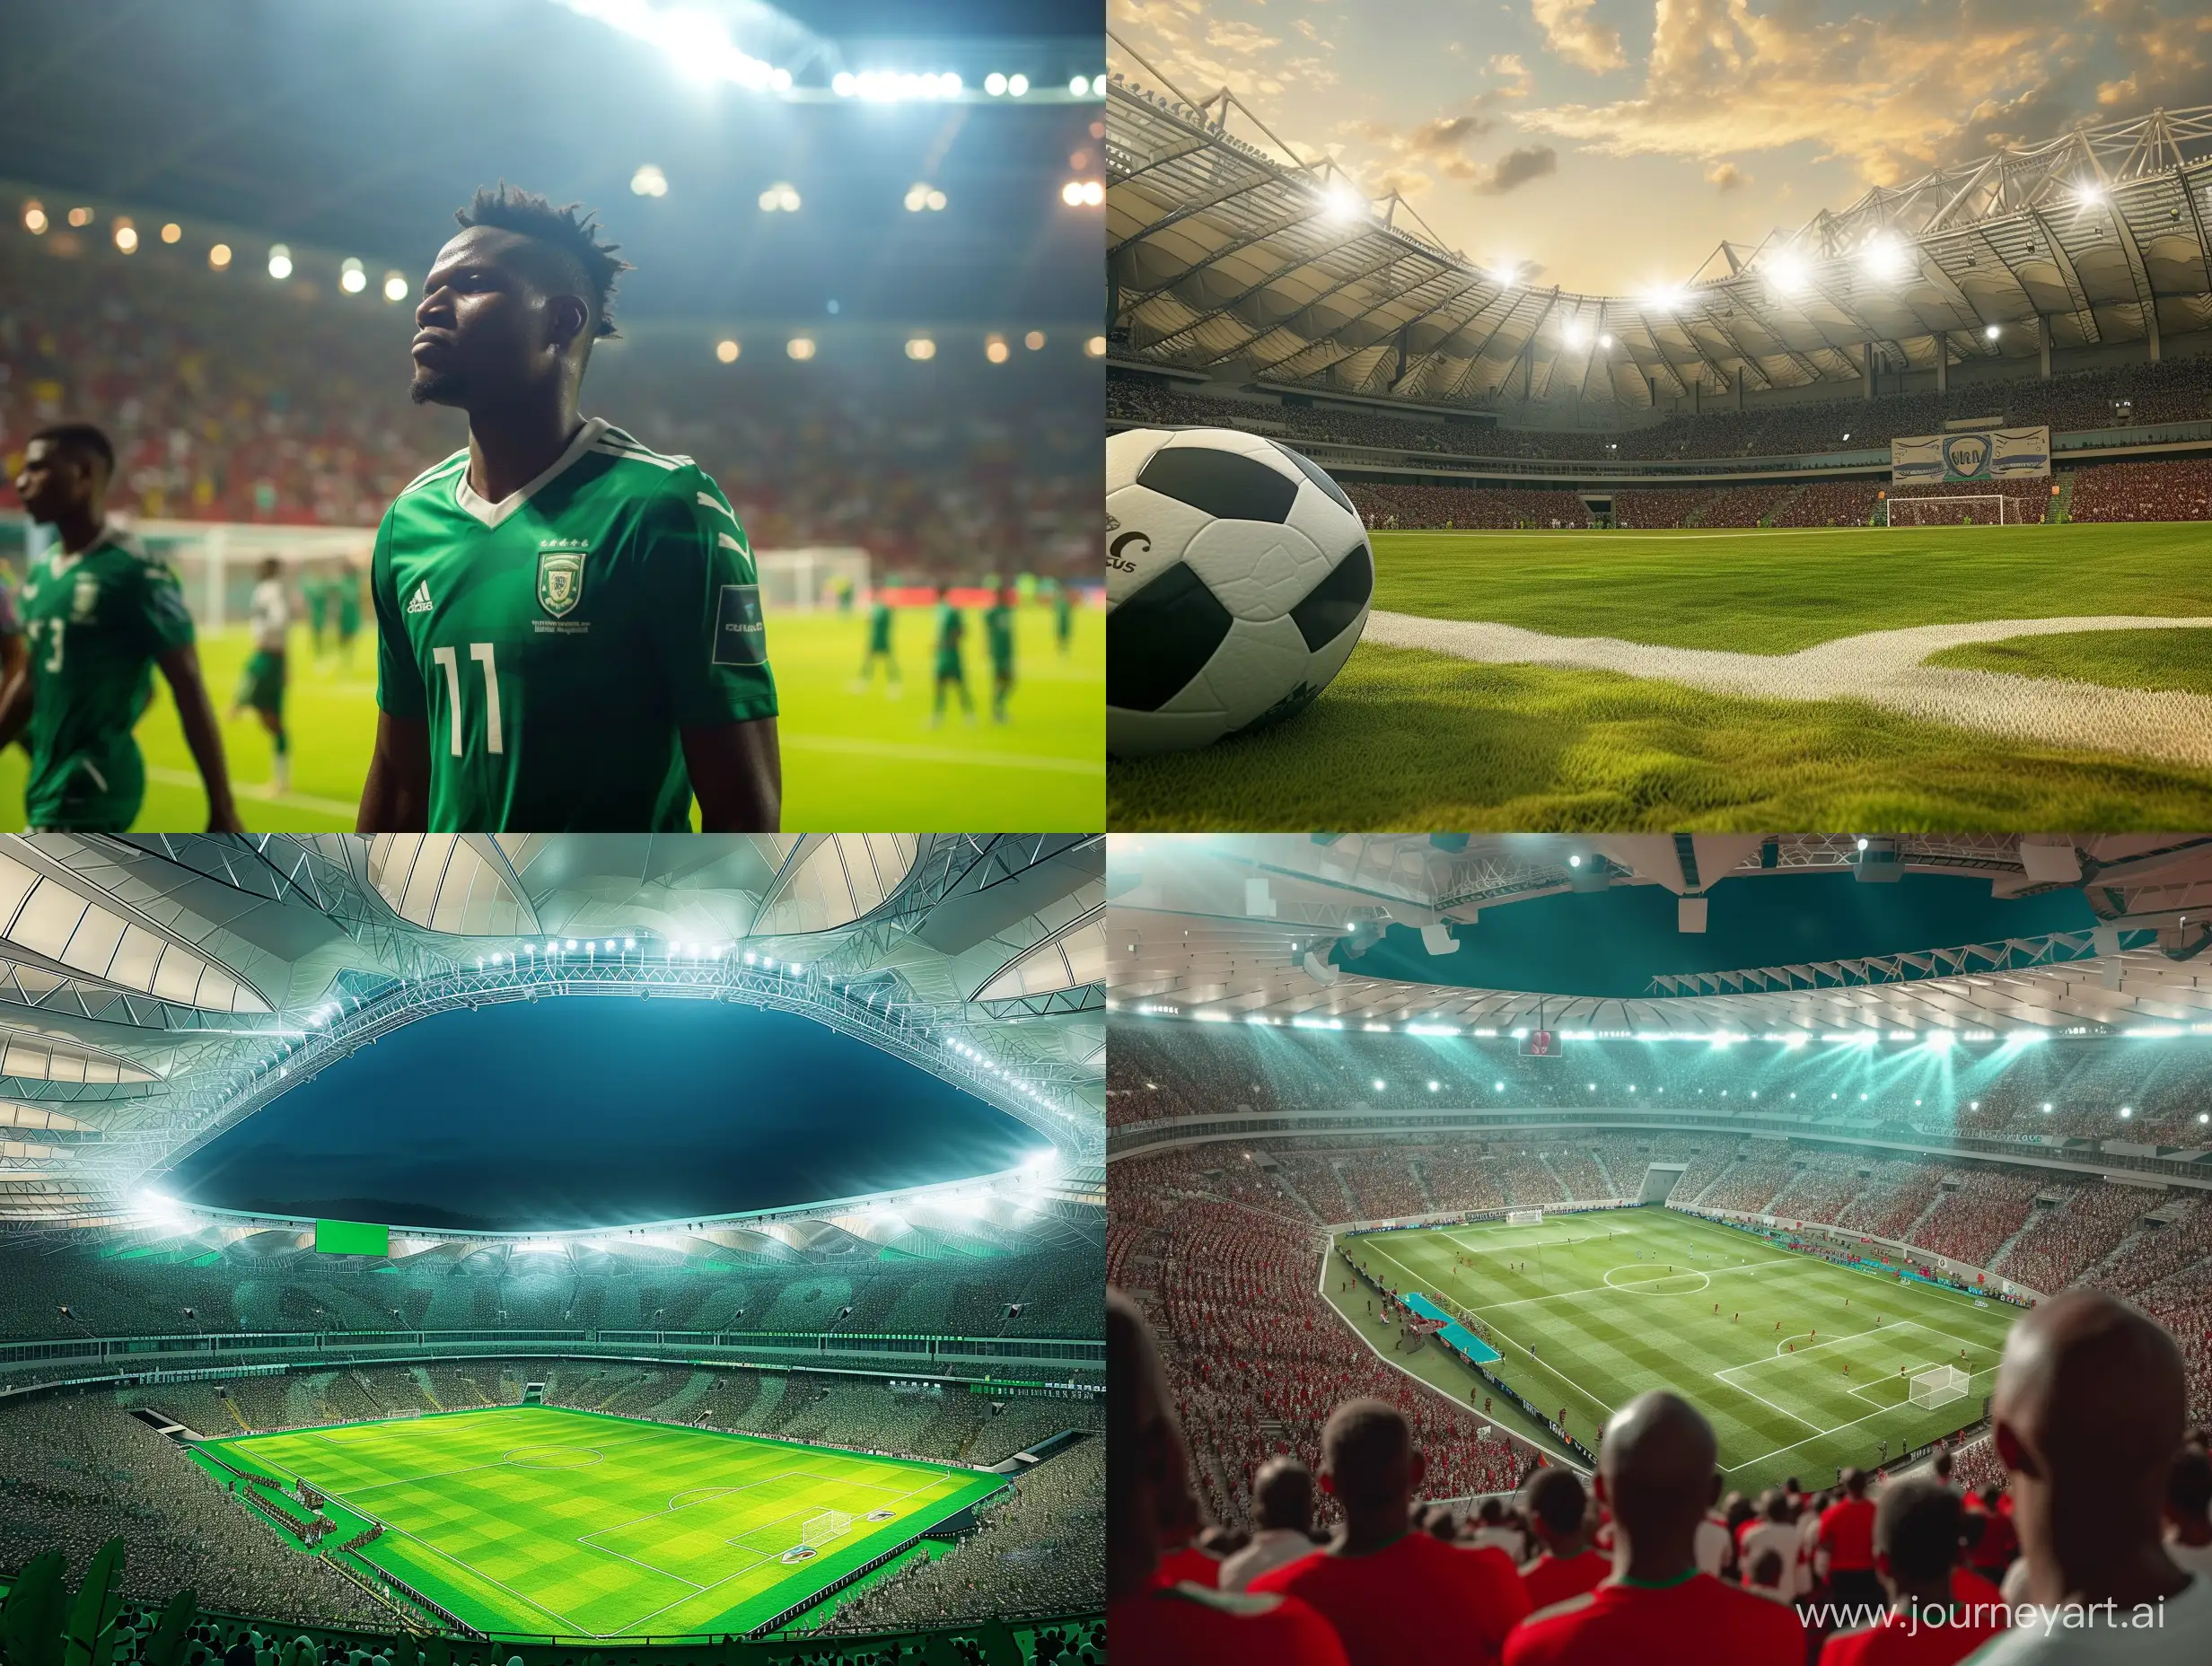 Vibrant-Nigeria-Football-Team-Plays-in-Packed-Stadium